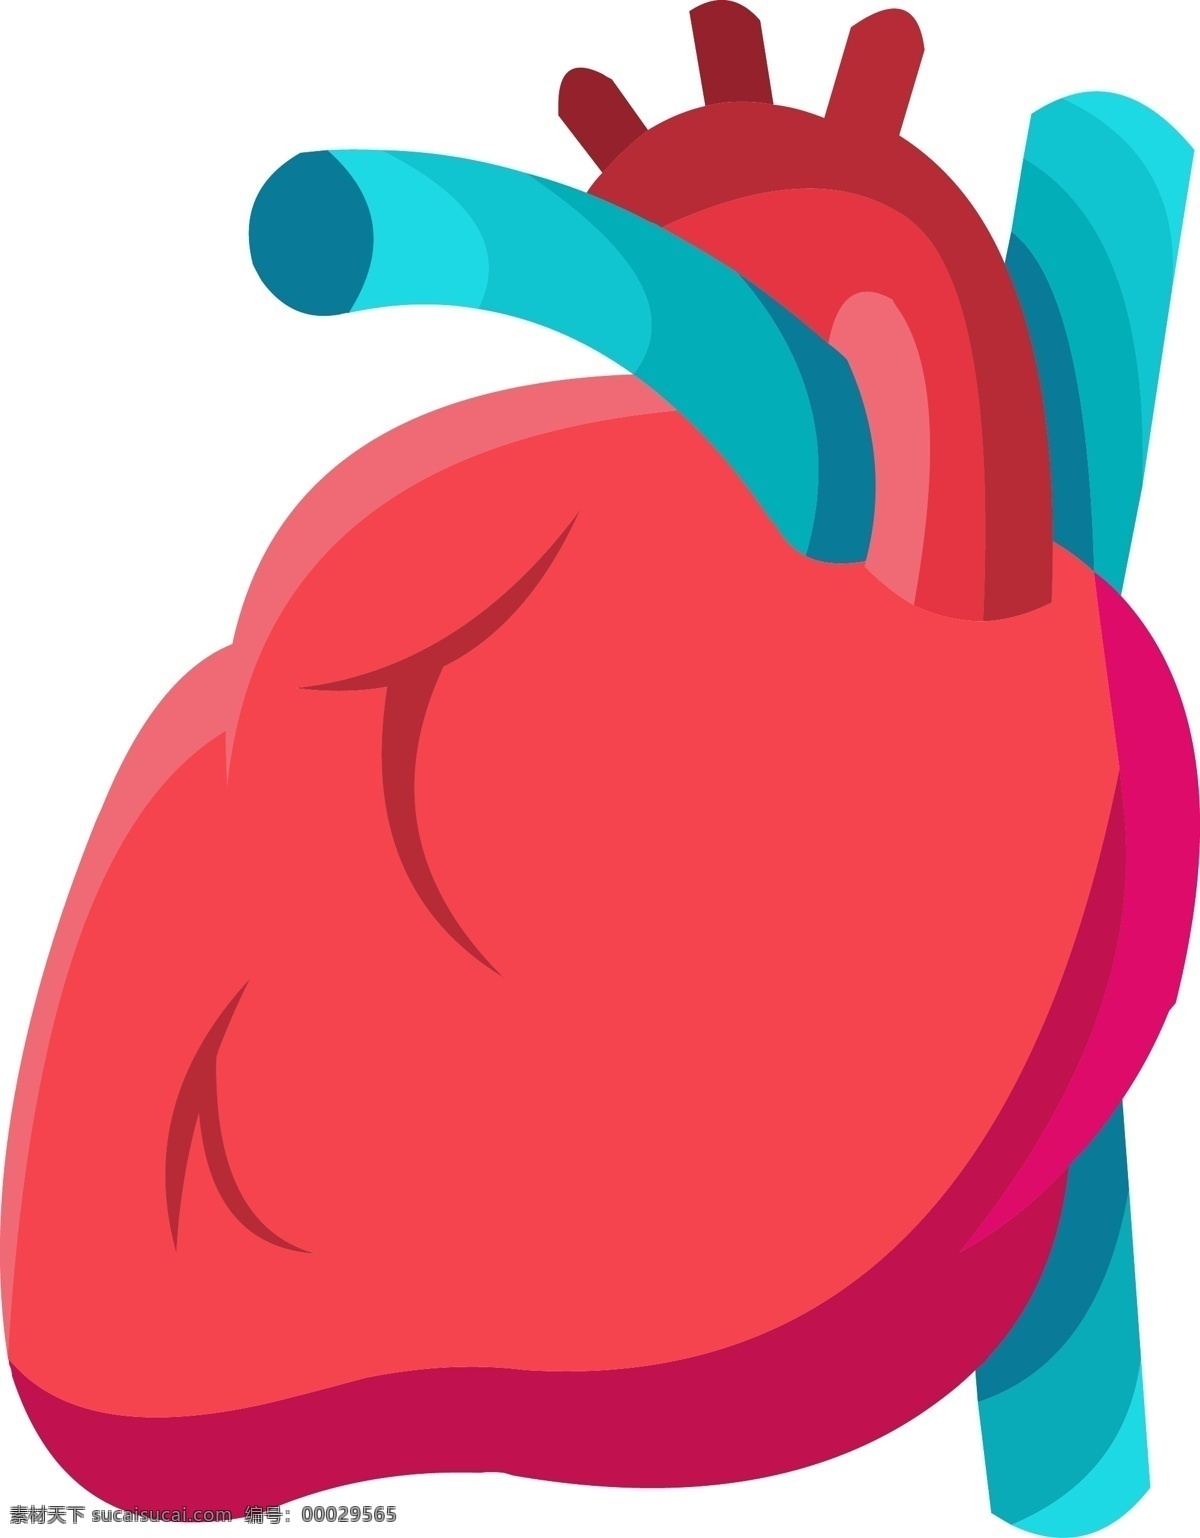 红蓝 手绘 人体 器官 心脏 矢量 免 抠 矢量心脏 心脏结构 器官结构 手绘器官 人体器官 矢量器官 器官图 五脏六腑 脏器 卡通器官